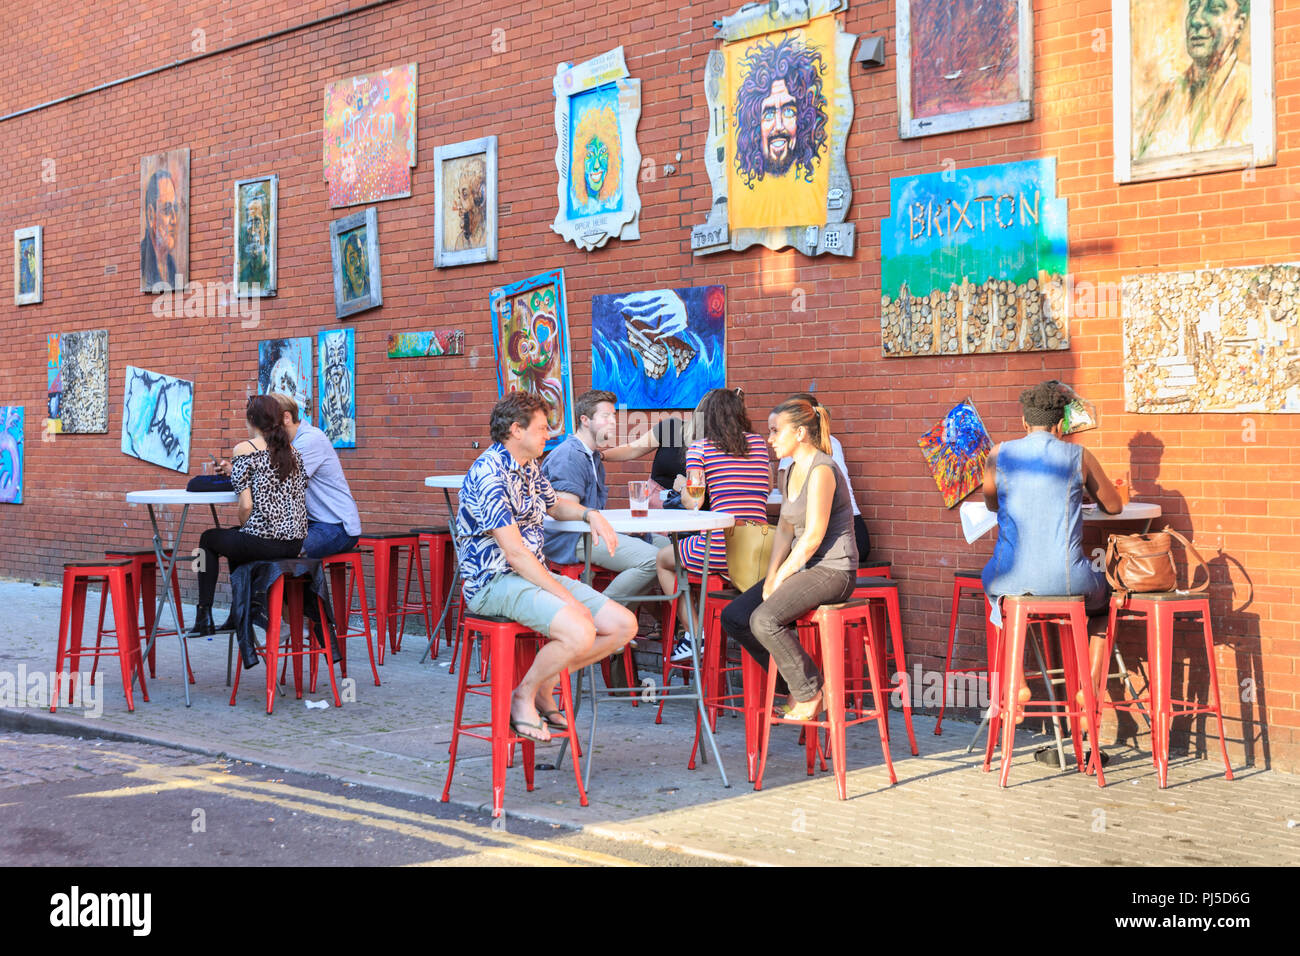 Persone sedersi in strada ritratti arte giardino, una comunità cafe e spazio d'arte in Beehive Place, Brixton, South London, Regno Unito Foto Stock